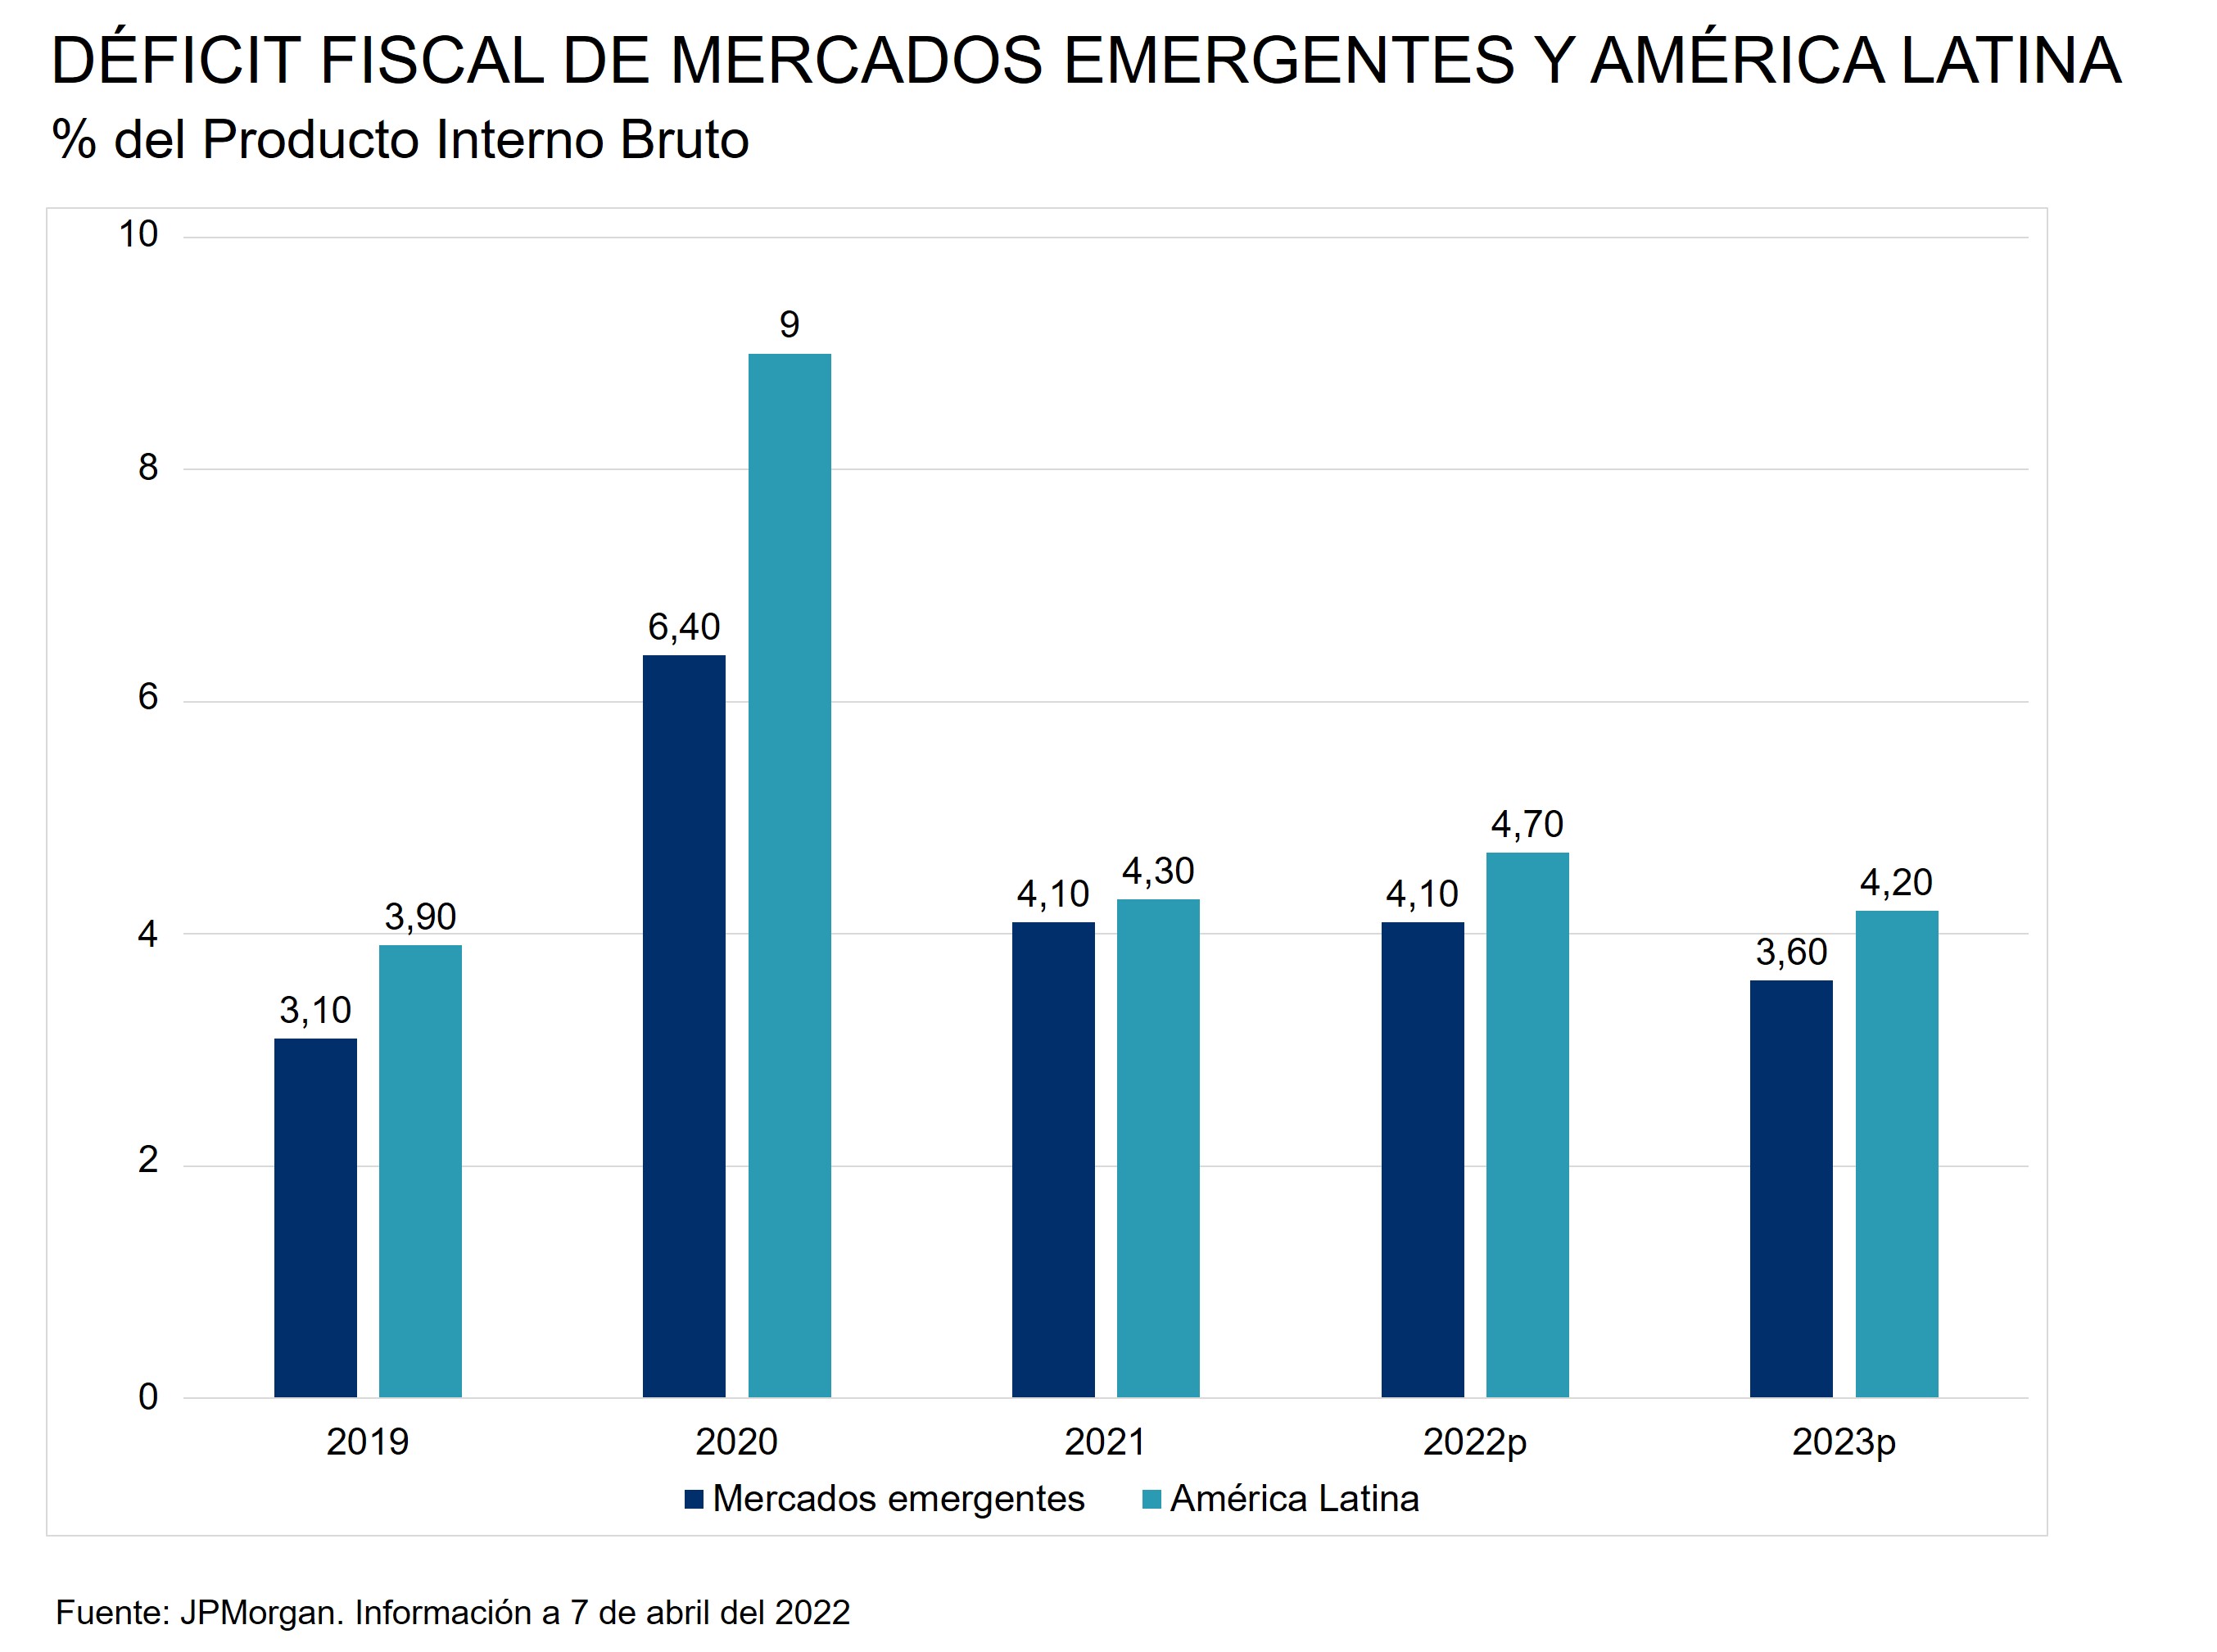 Este gráfico muestra el déficit fiscal de los mercados emergentes y de América Latina como % del producto interior bruto desde el año 2019 hasta el 2021, así como las proyecciones para el 2022 y para el 2023.